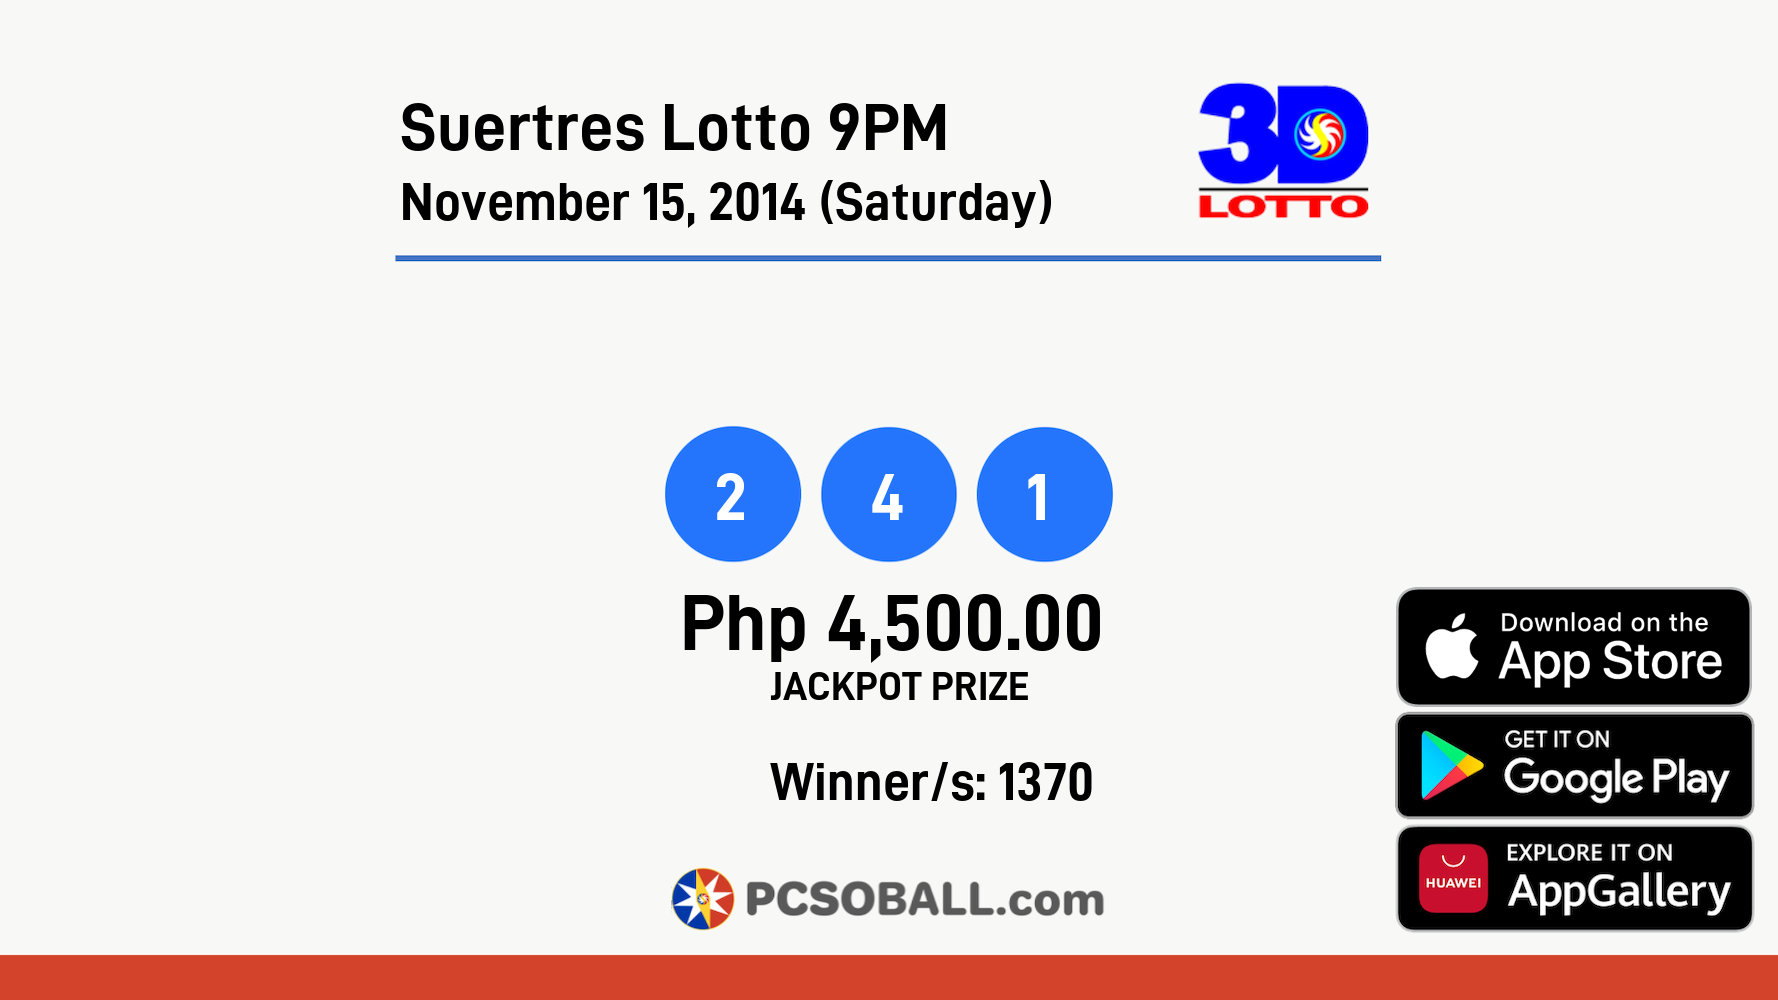 Suertres Lotto 9PM November 15, 2014 (Saturday) Result